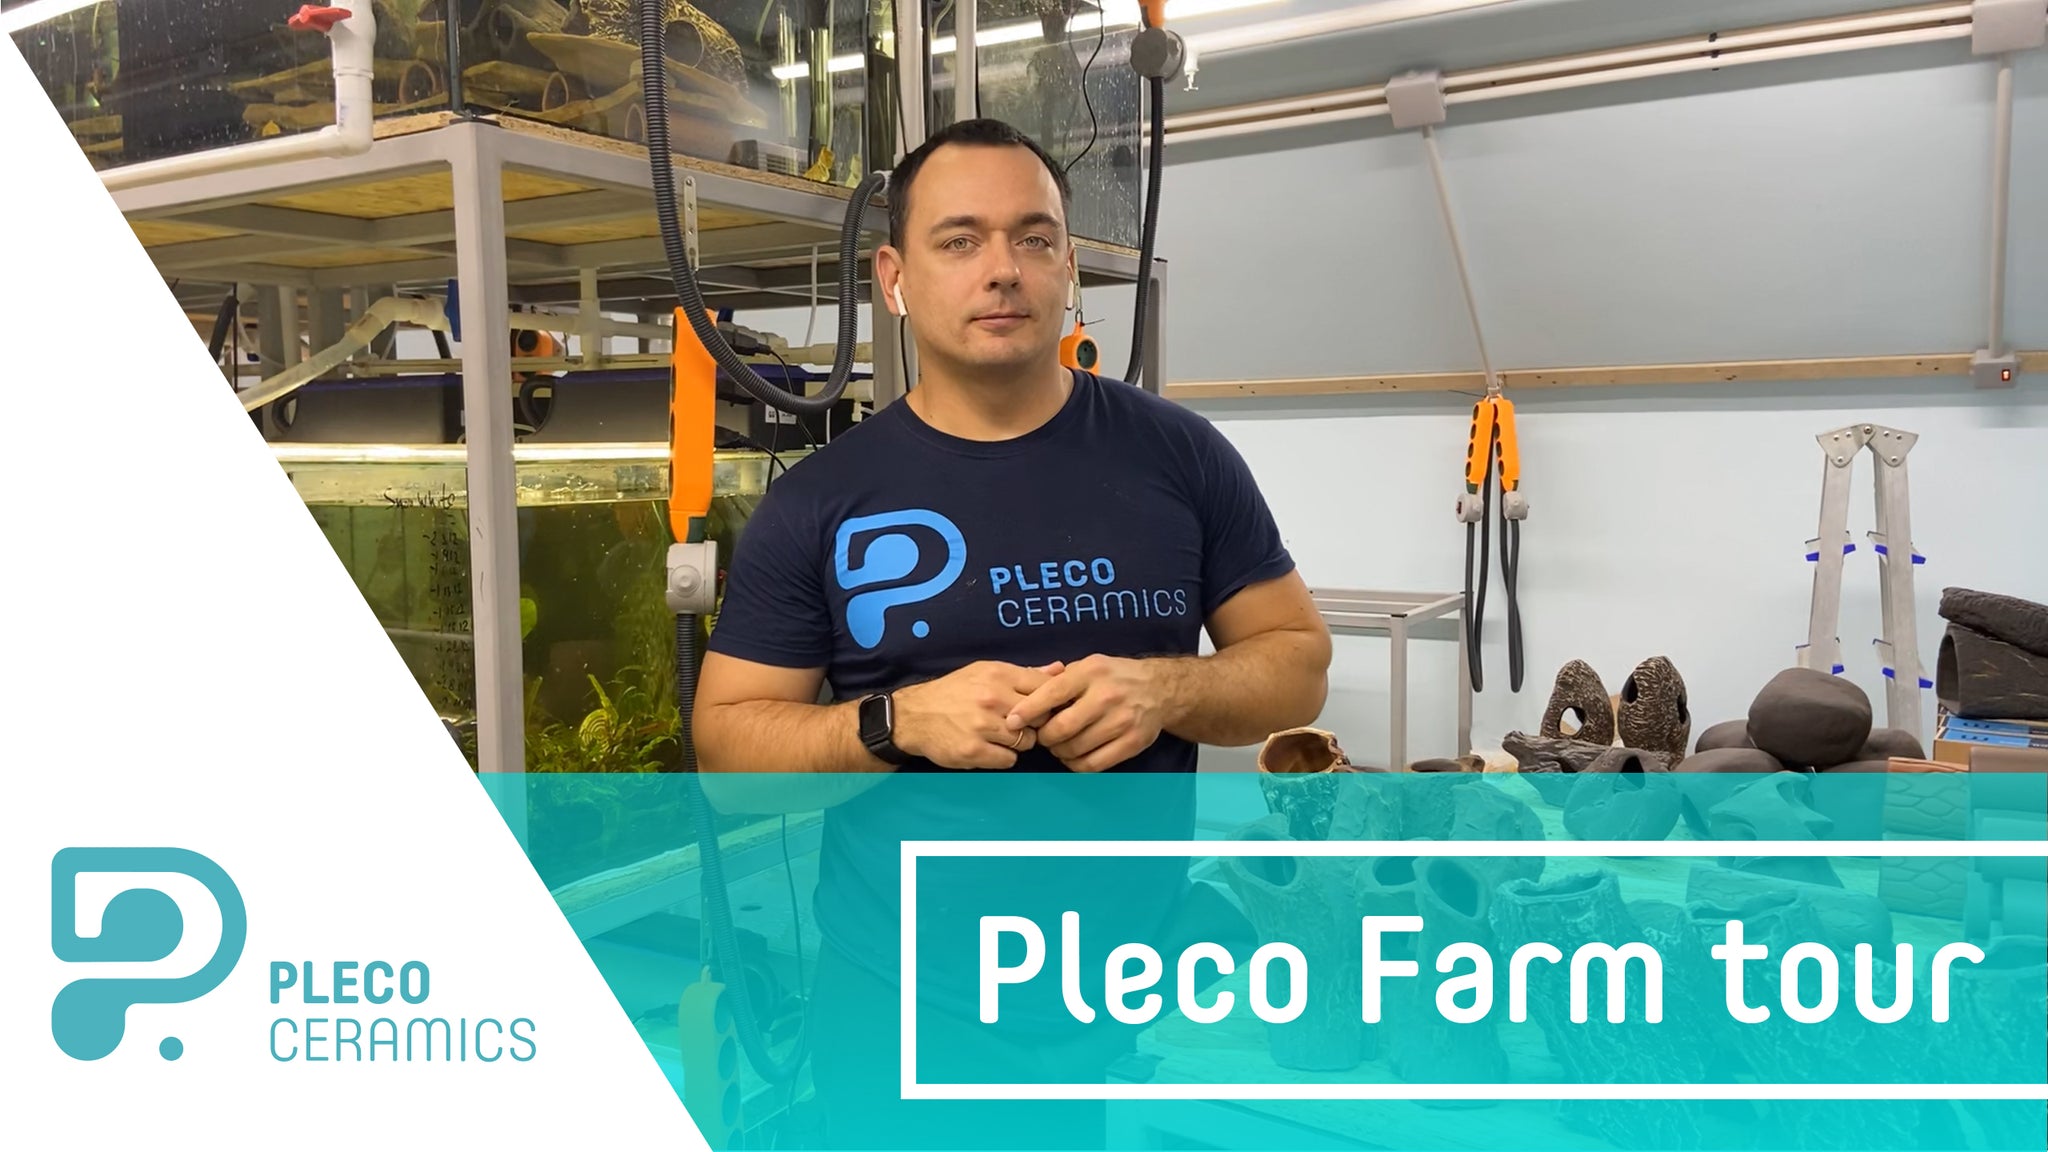 Plecoceramics Pleco Farm tour